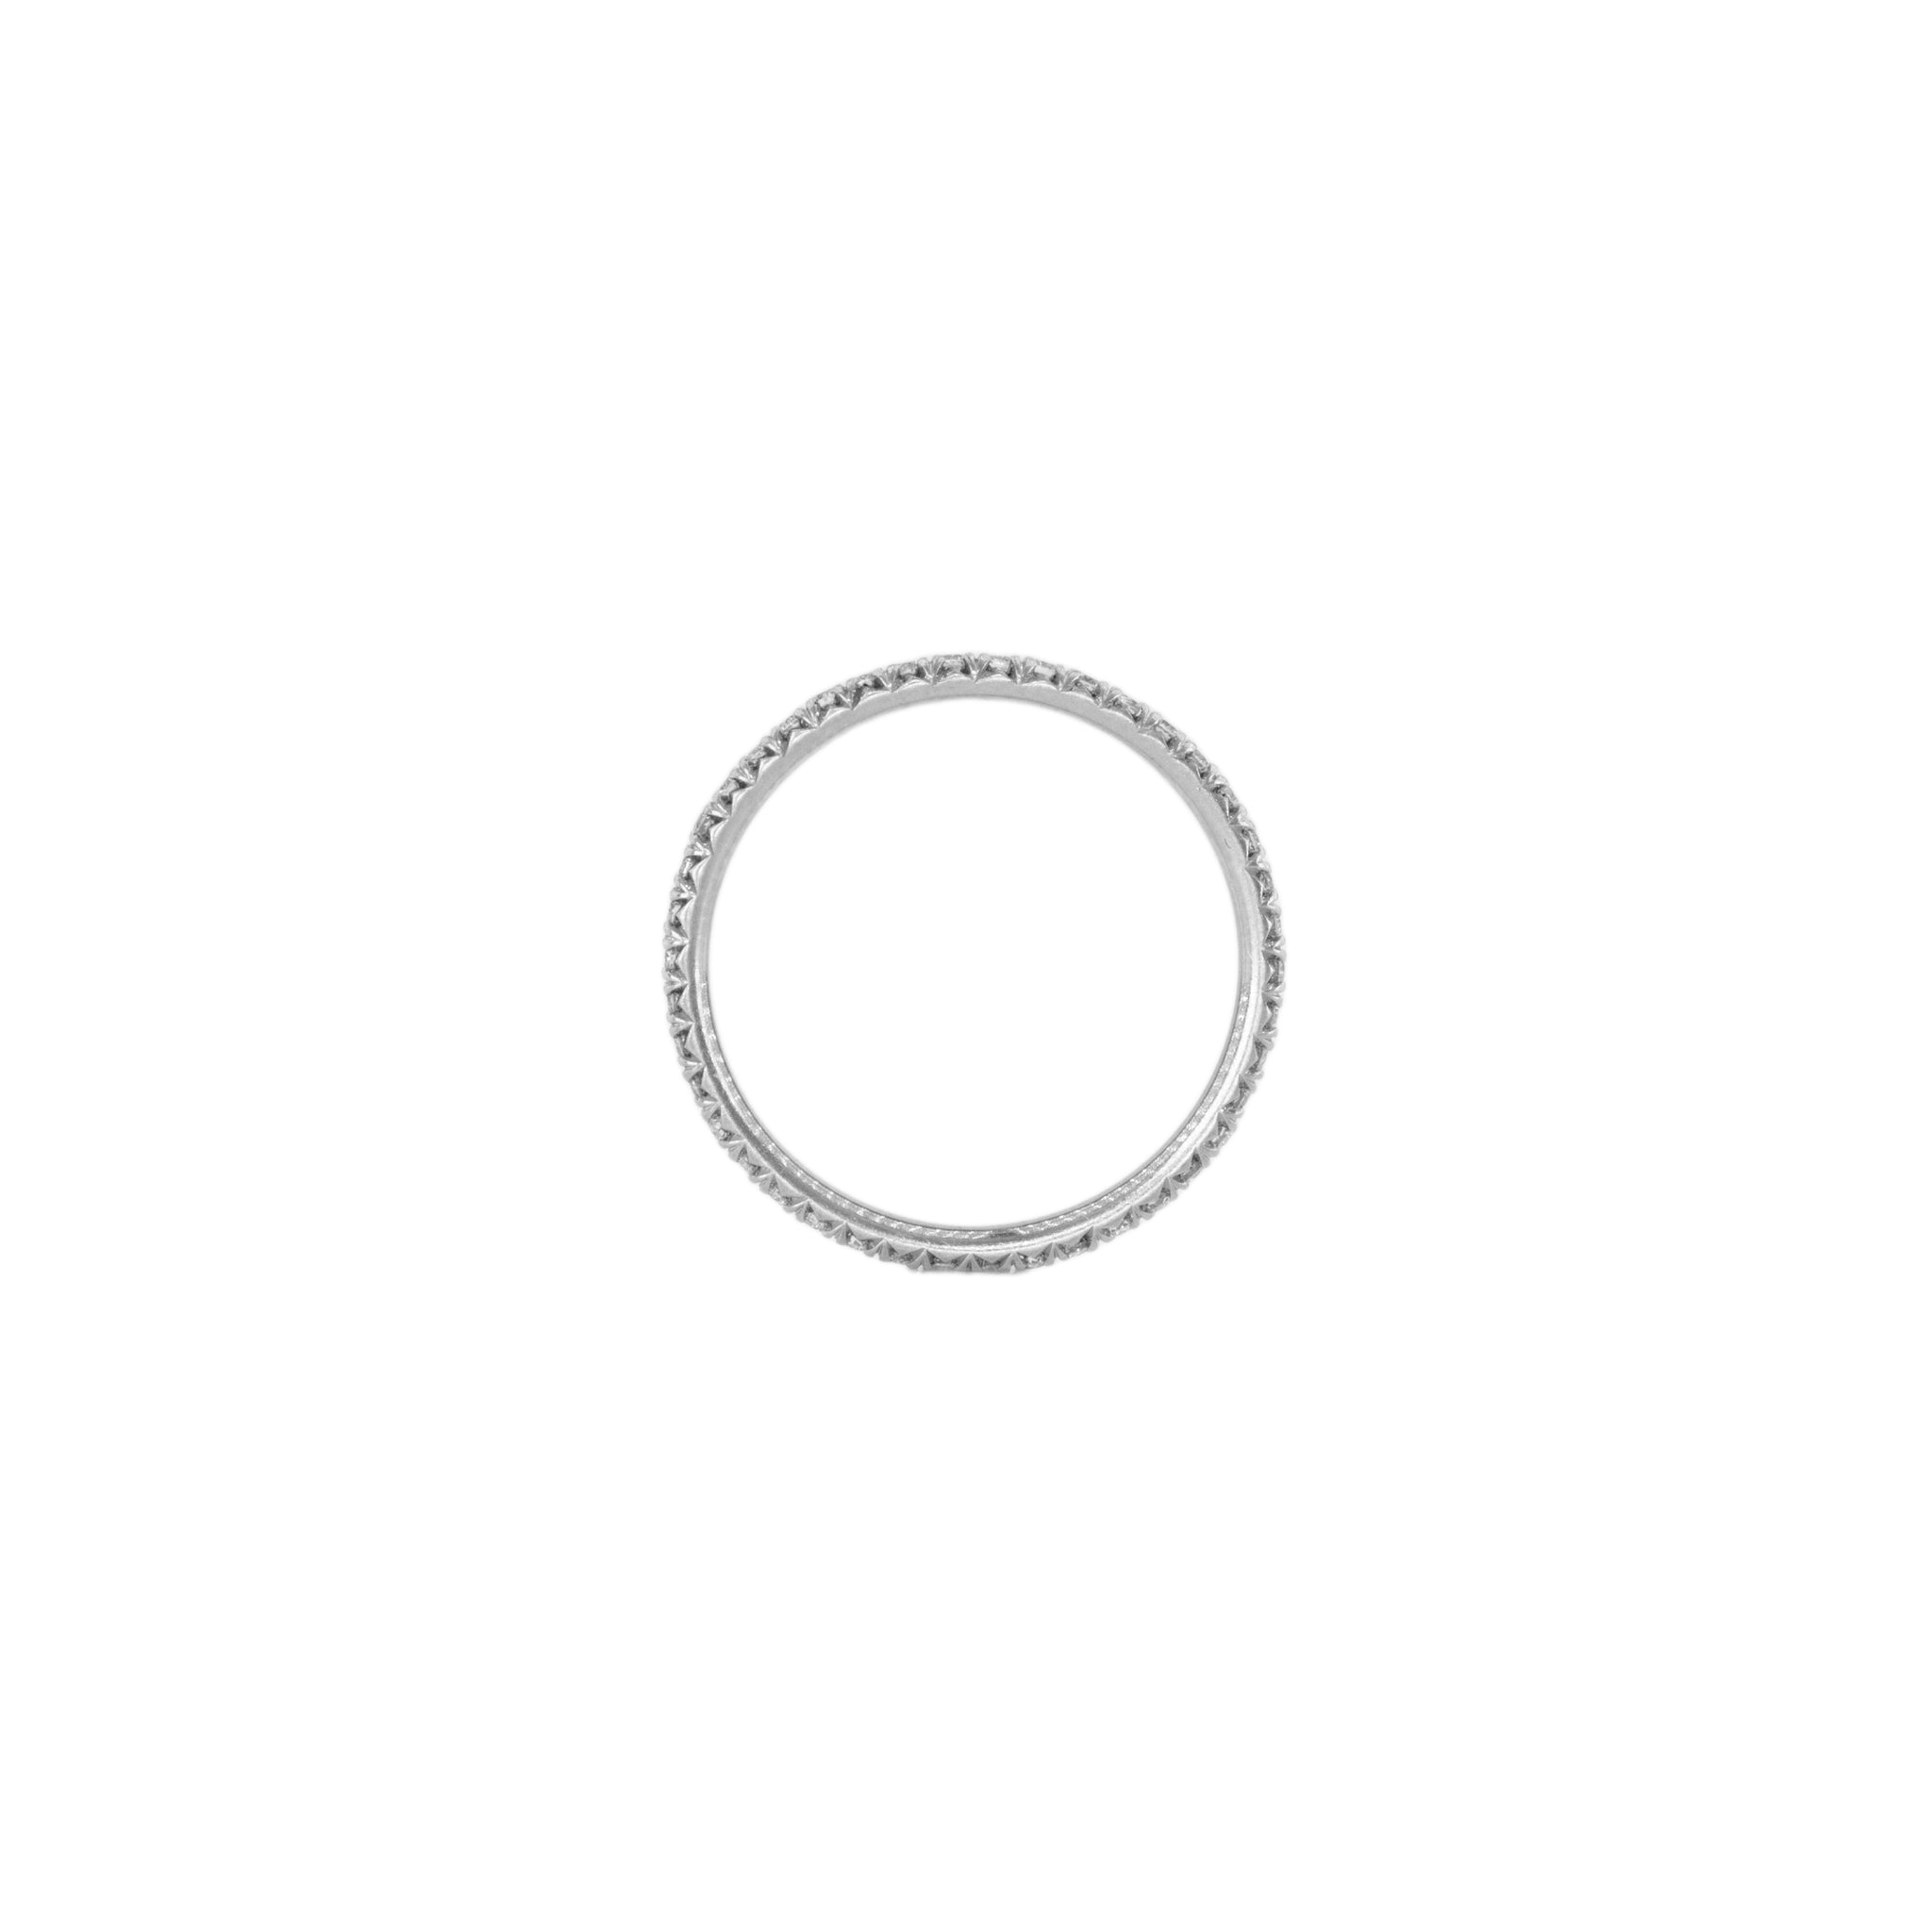 the petite ètoile blanc eternity ring